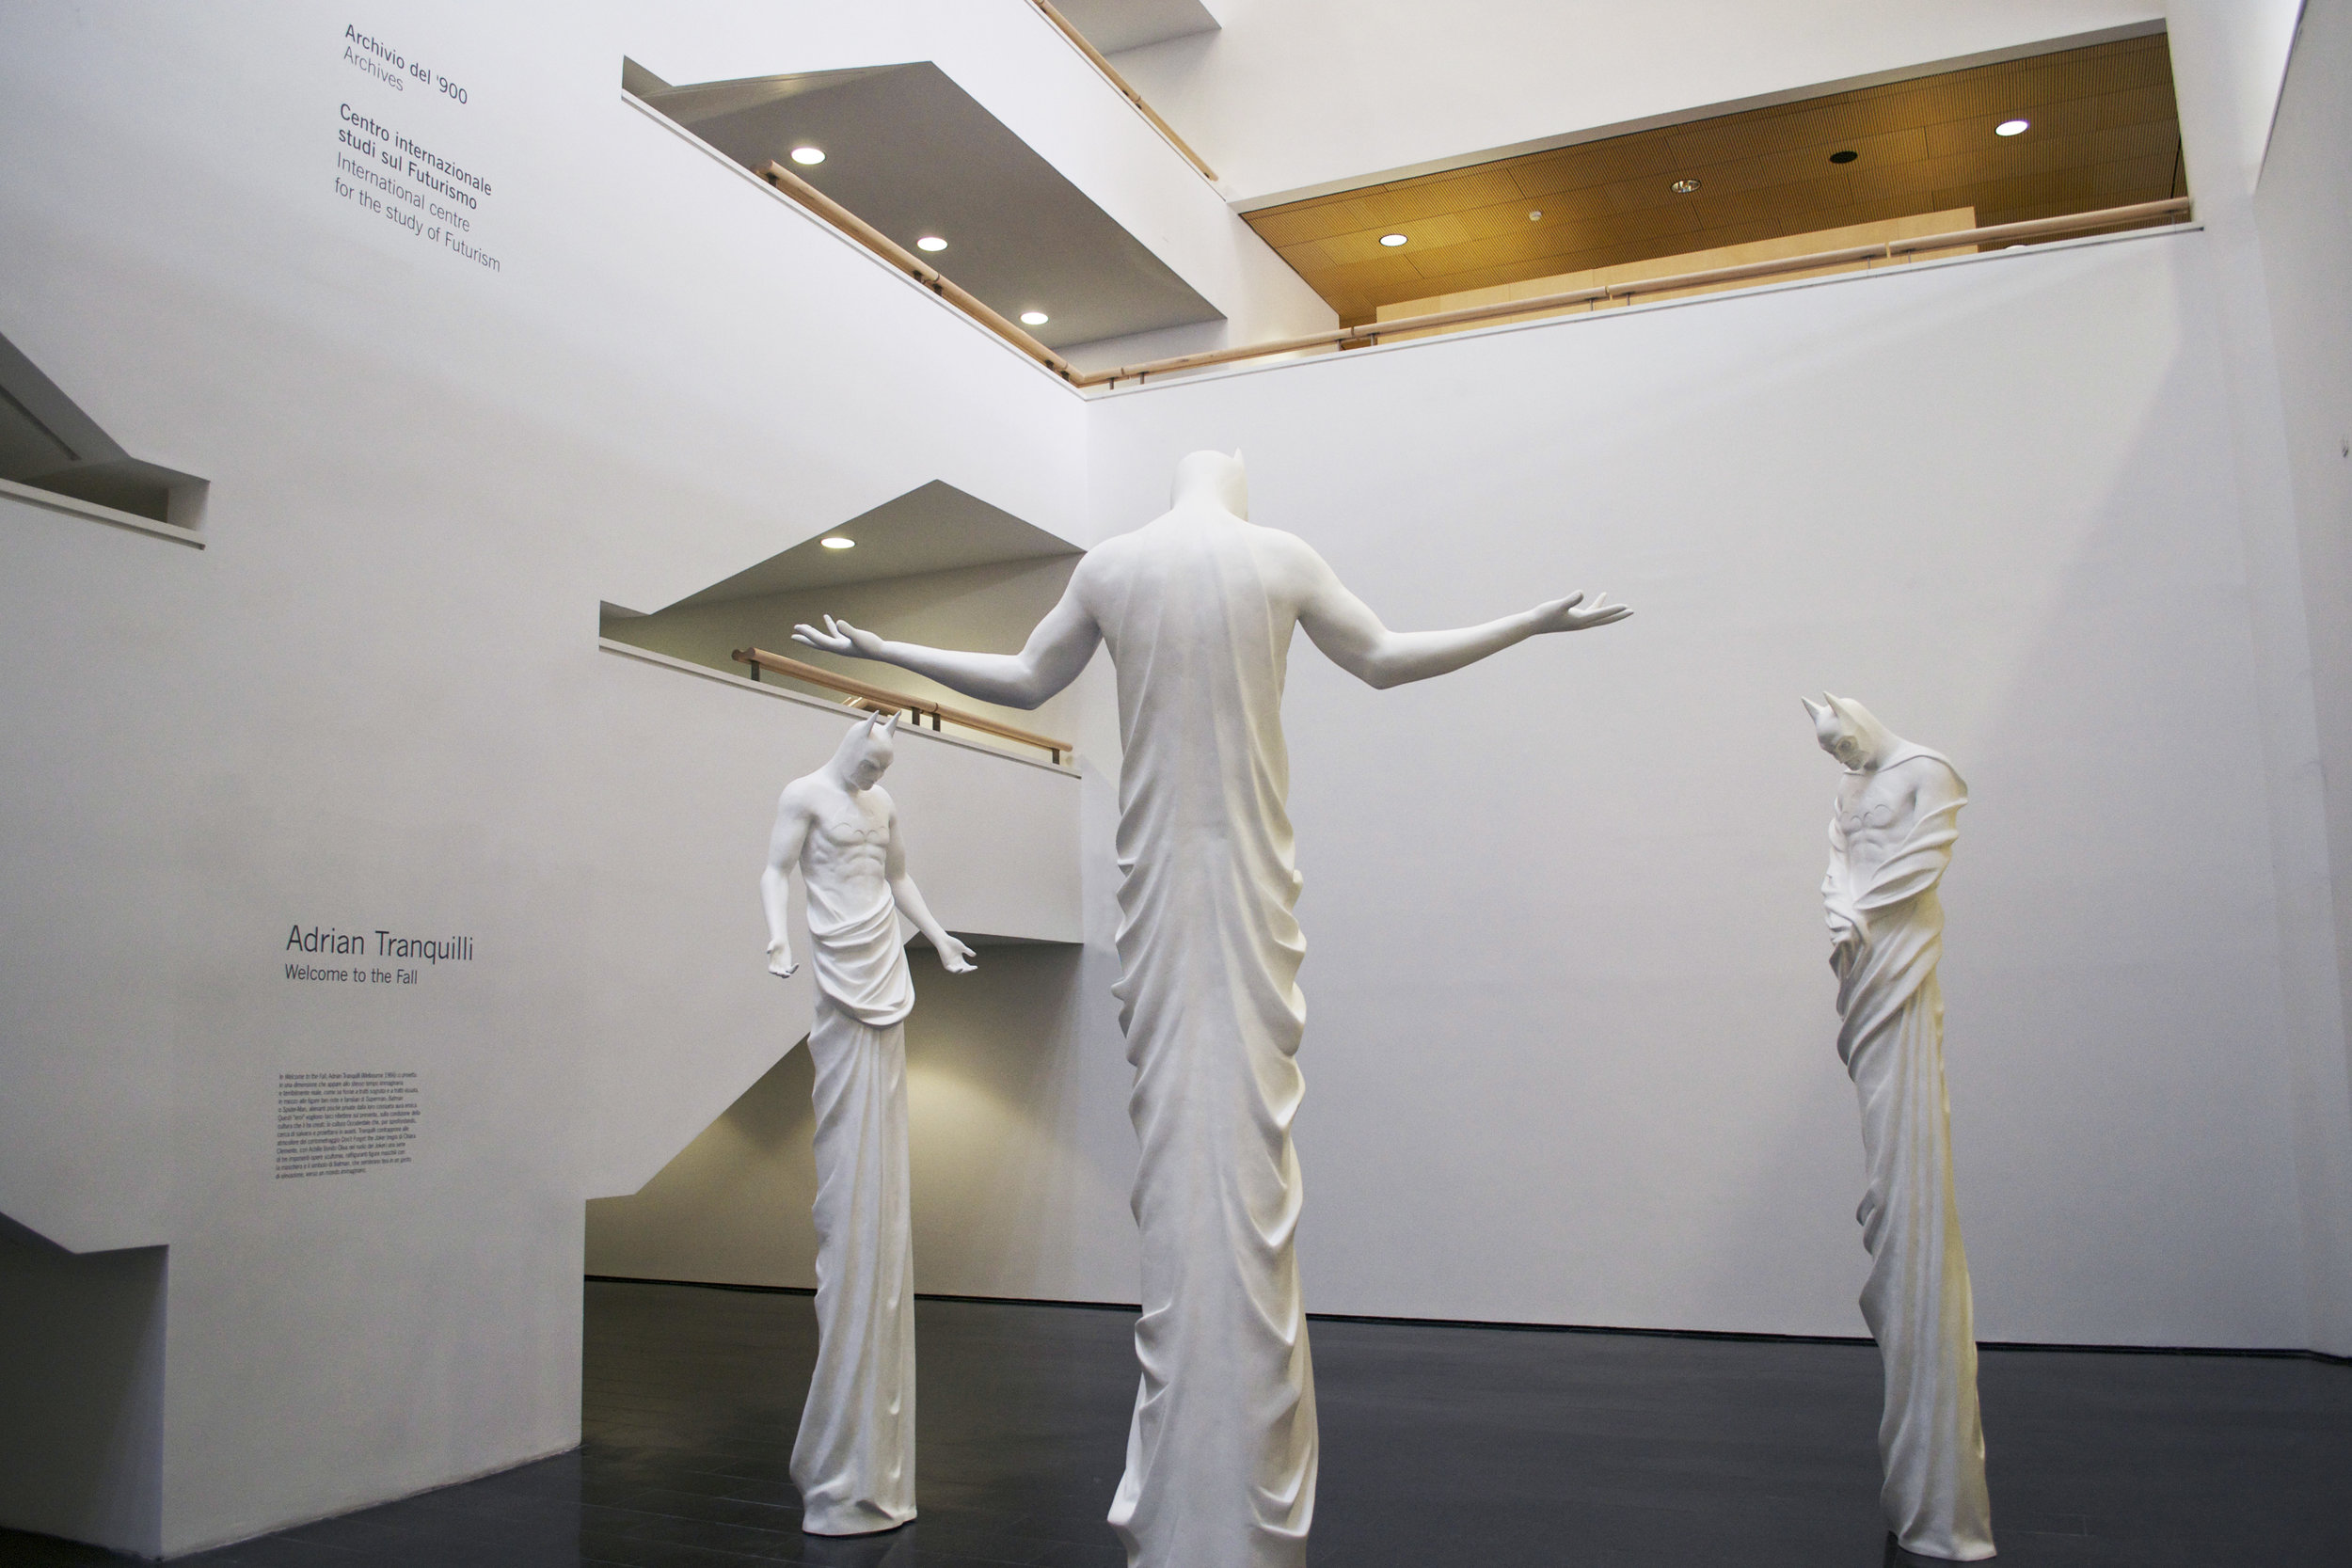    In Excelsis , 2013 . MART - Museo d'Arte Moderna e Contemporanea di Trento e Rovereto, Rovereto 2014. Installation view.Photo: Studio Adrian Tranquilli 